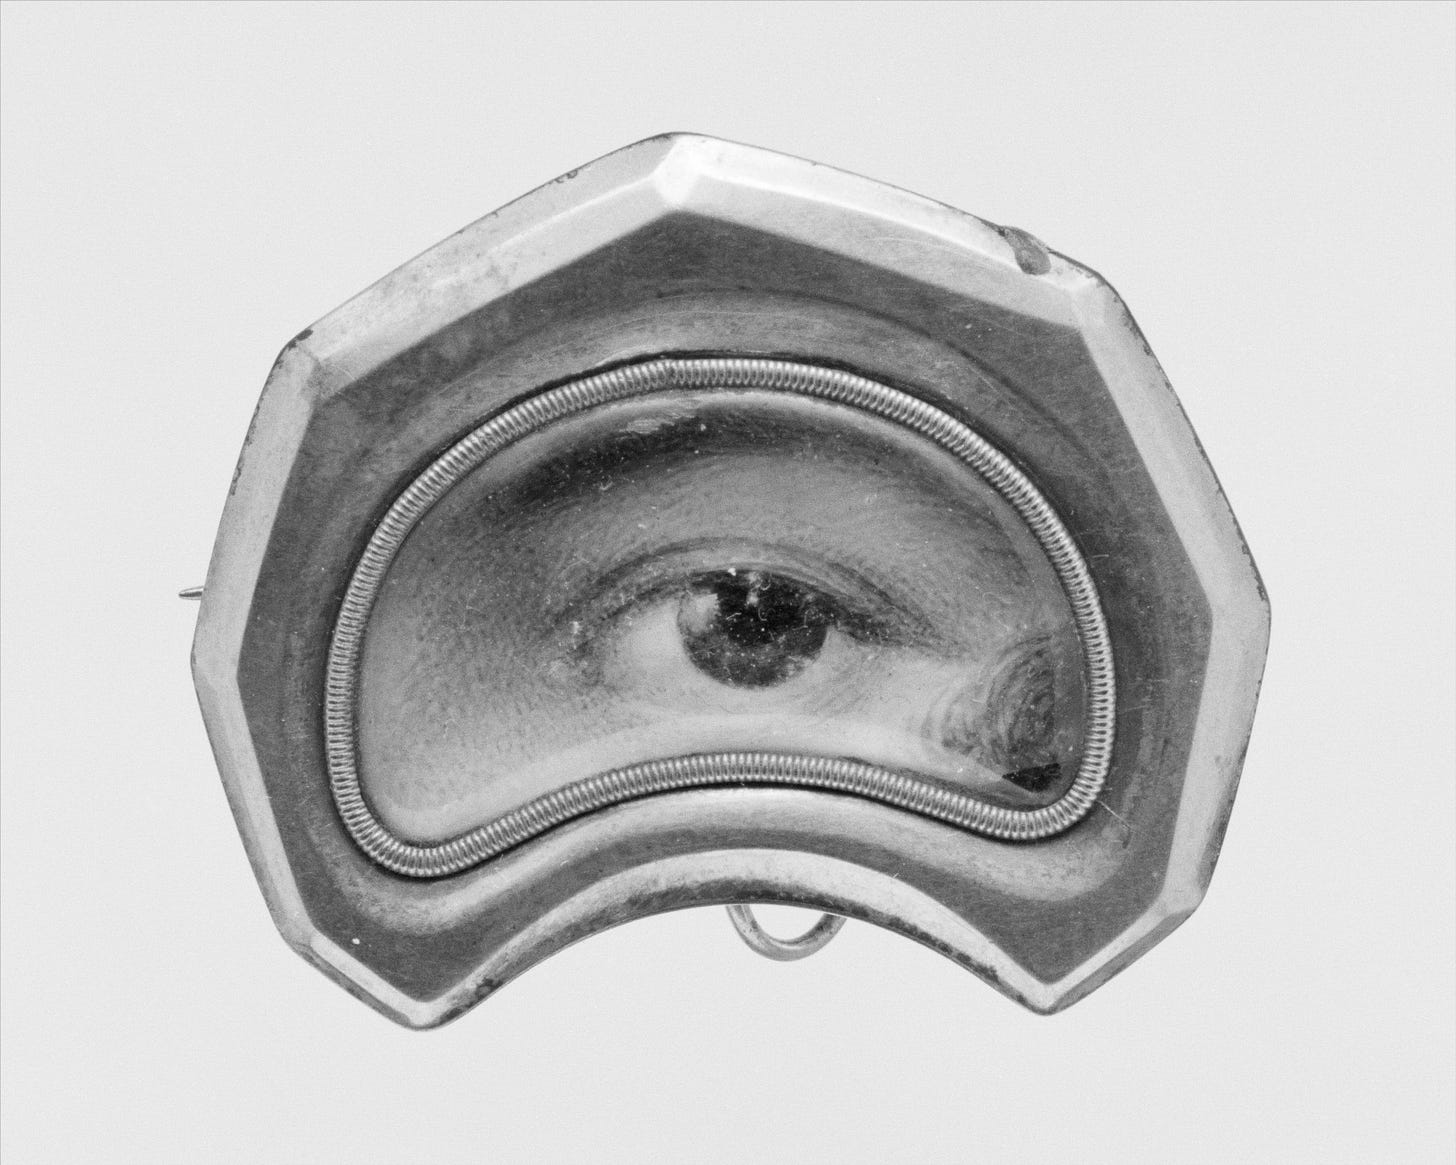 Painted eye encased in a silver brooch.